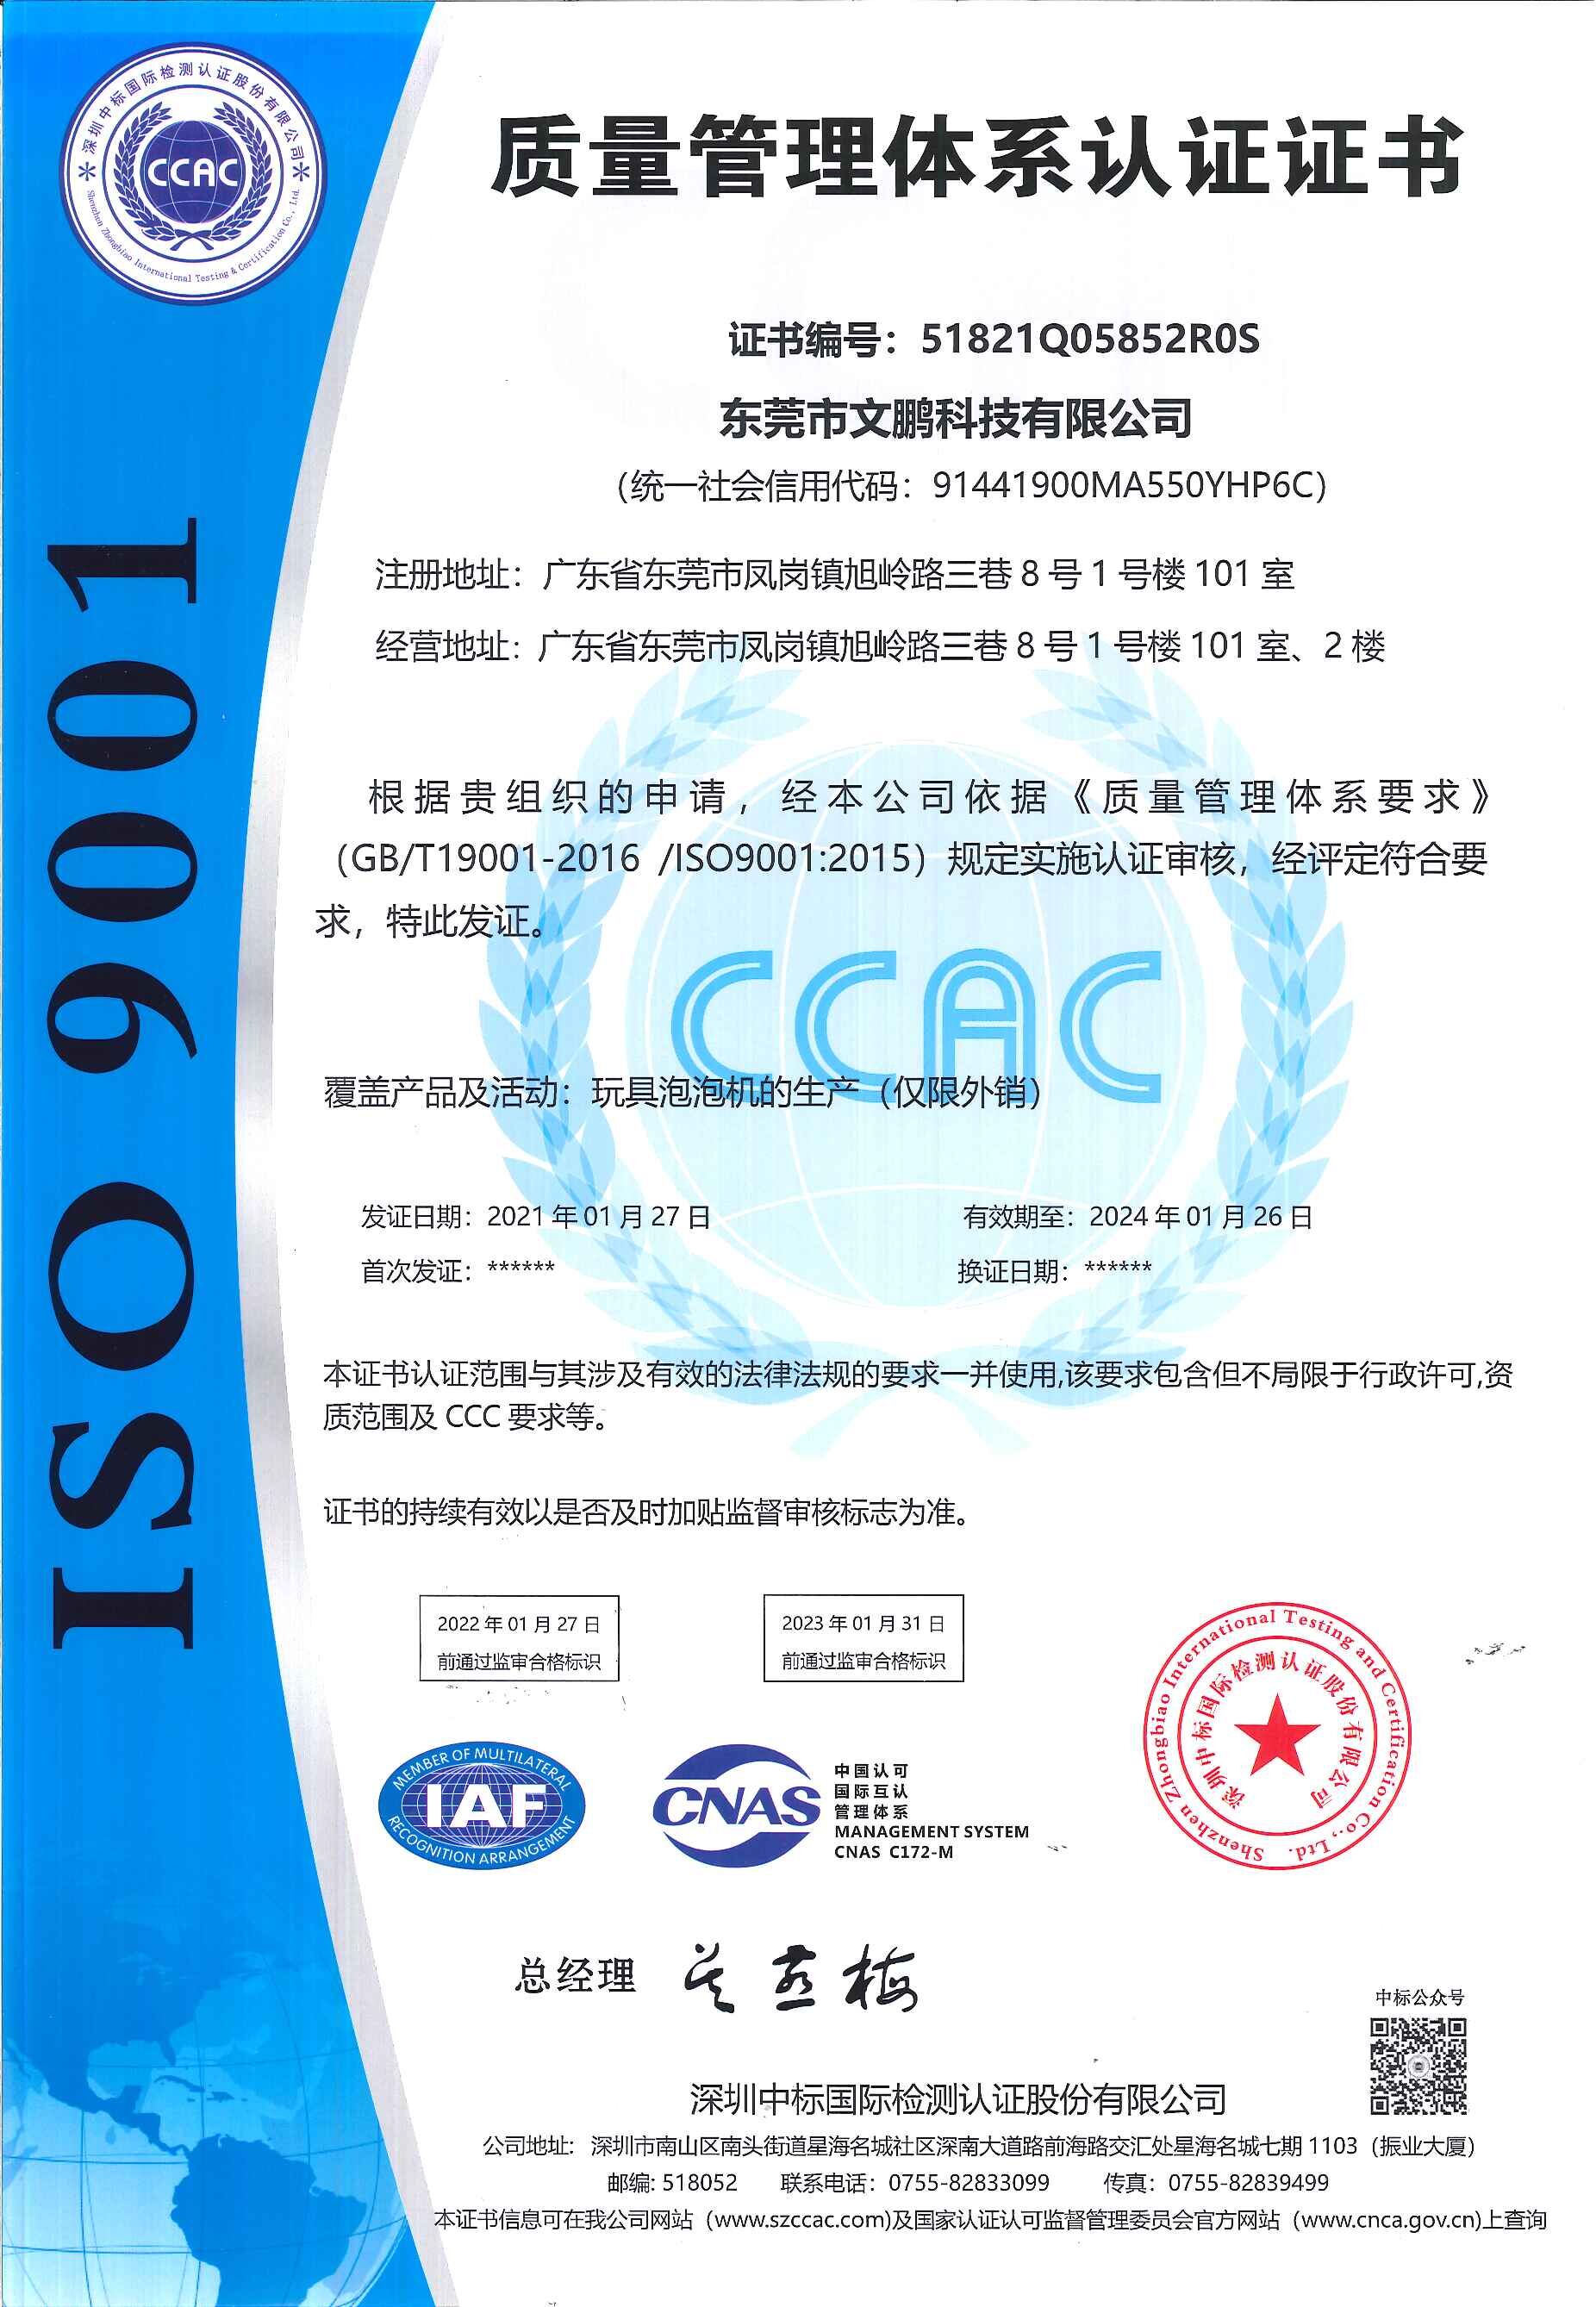 祝贺东莞市文鹏科技有限公司顺利通过ISO9001认证